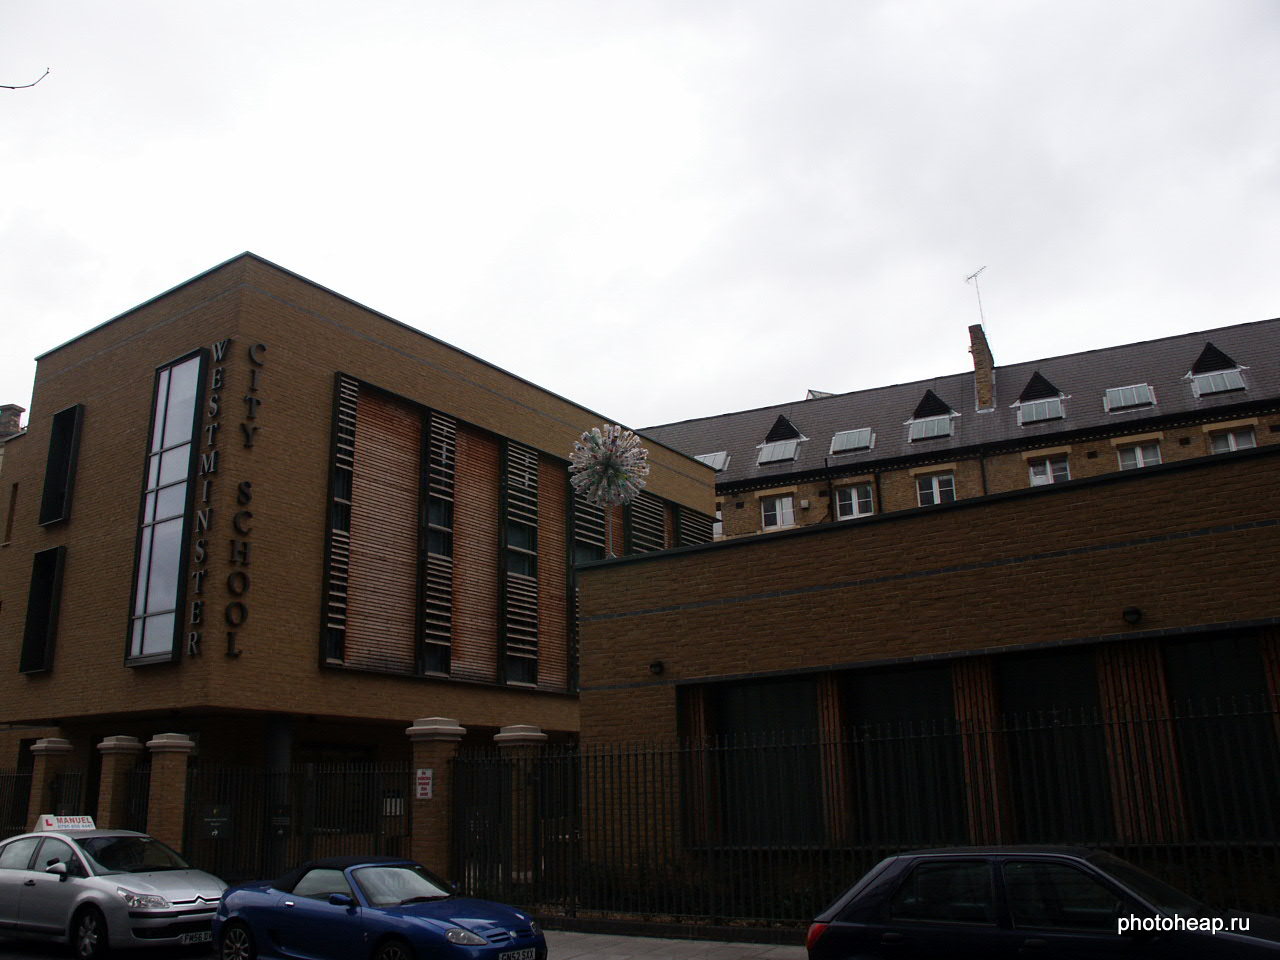 Westminster city school